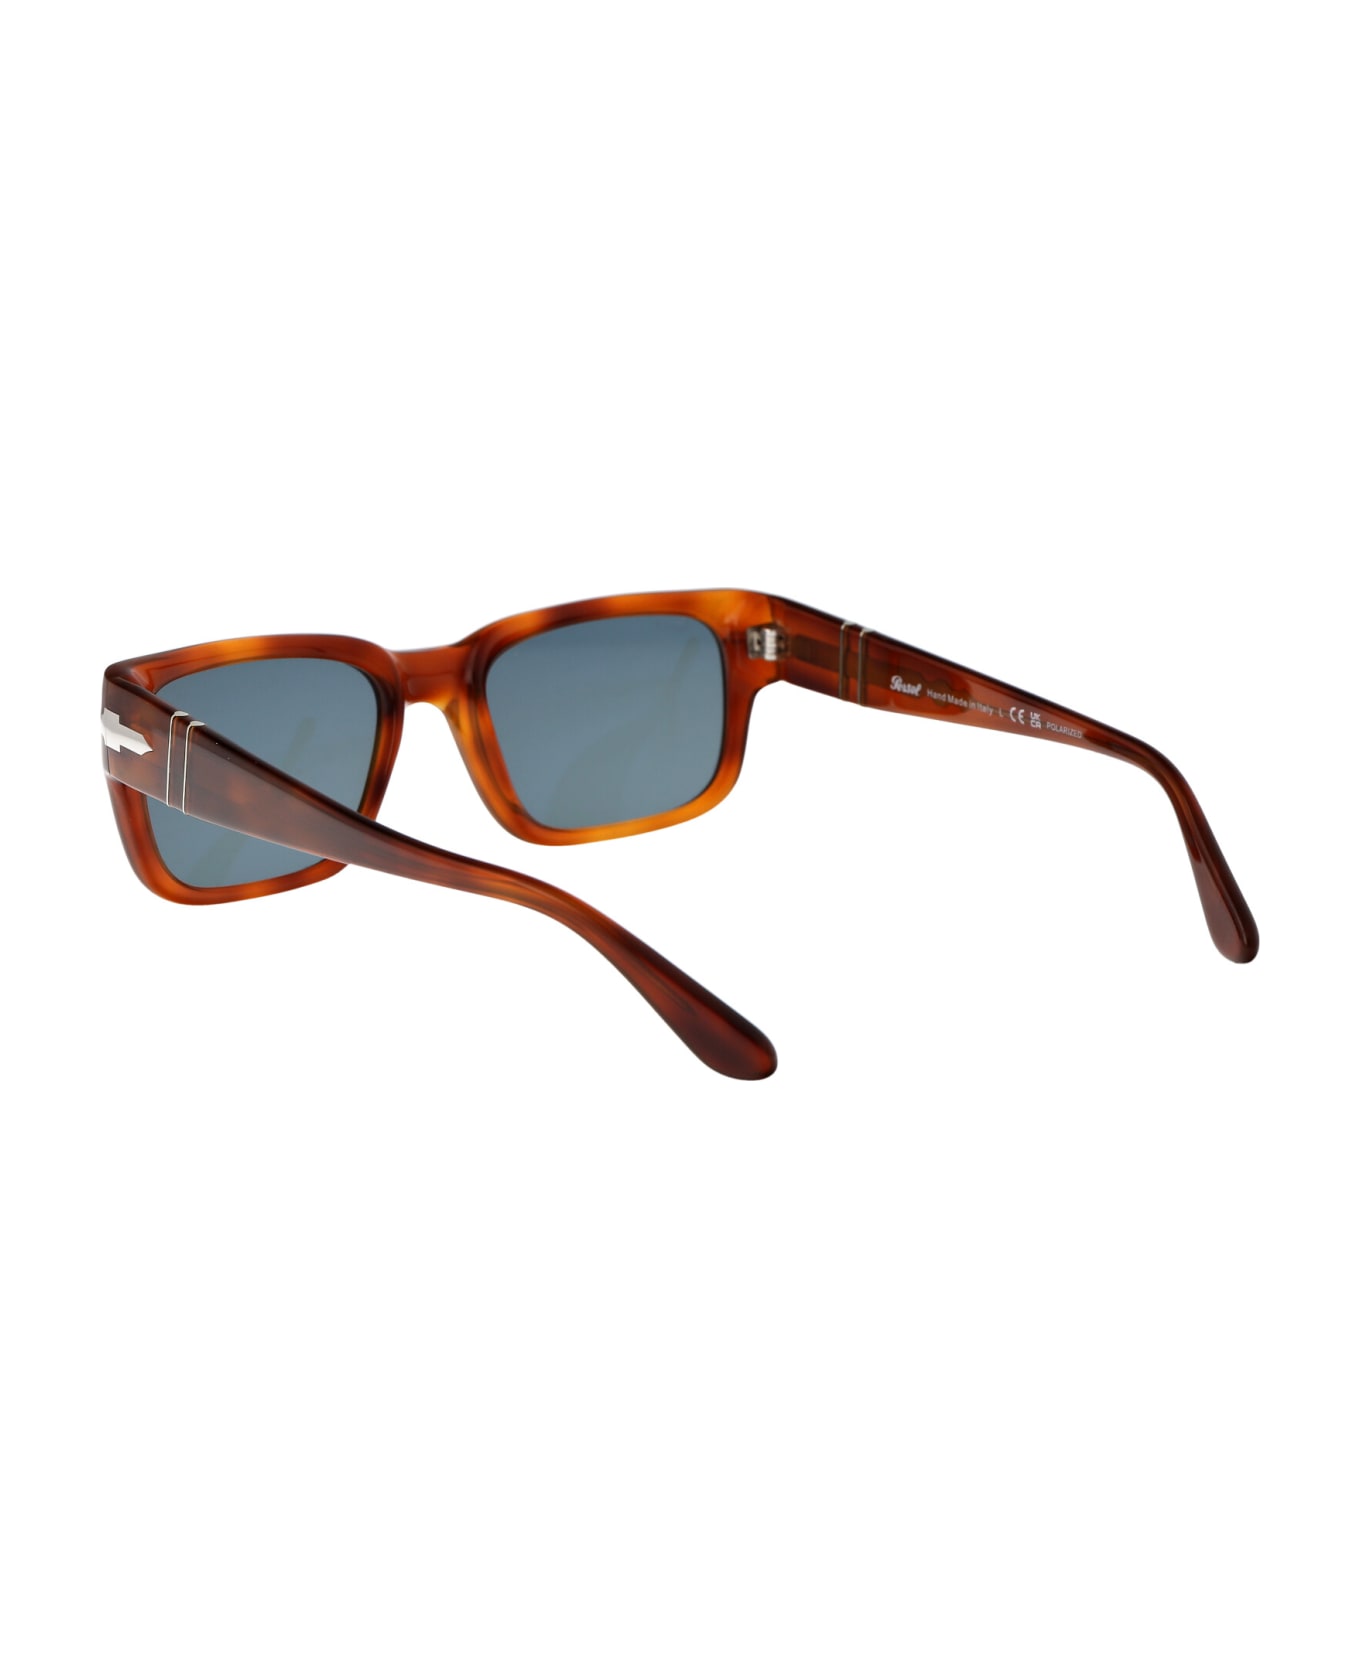 Persol 0po3315s Sunglasses - 96/3R Terra Di Siena